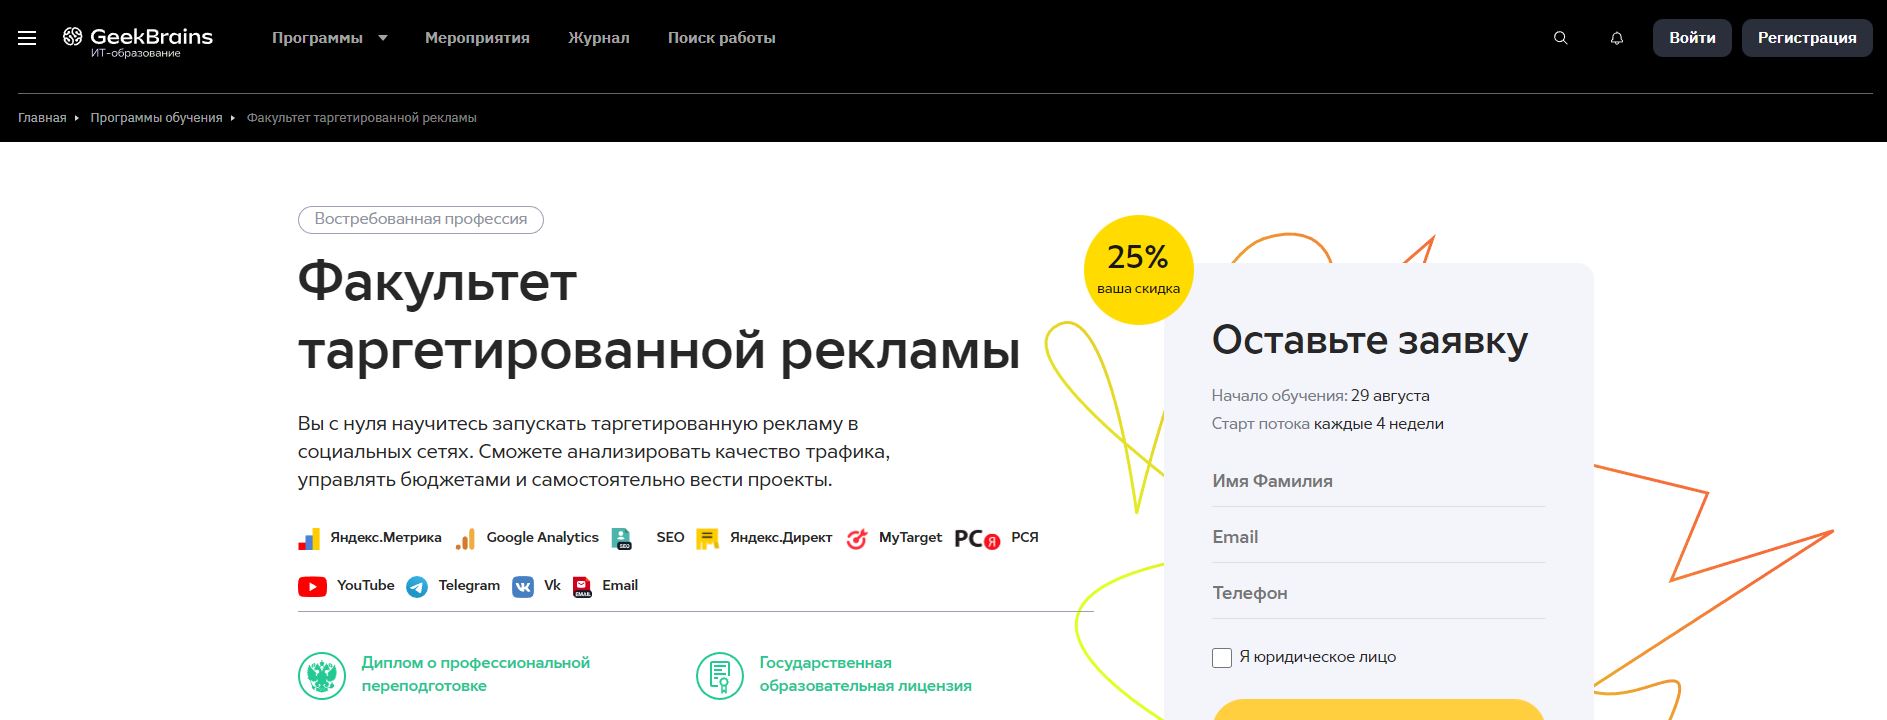 TOP 10 online courses on targeted advertising on Vkontakte 2022 - GeekBrains.  